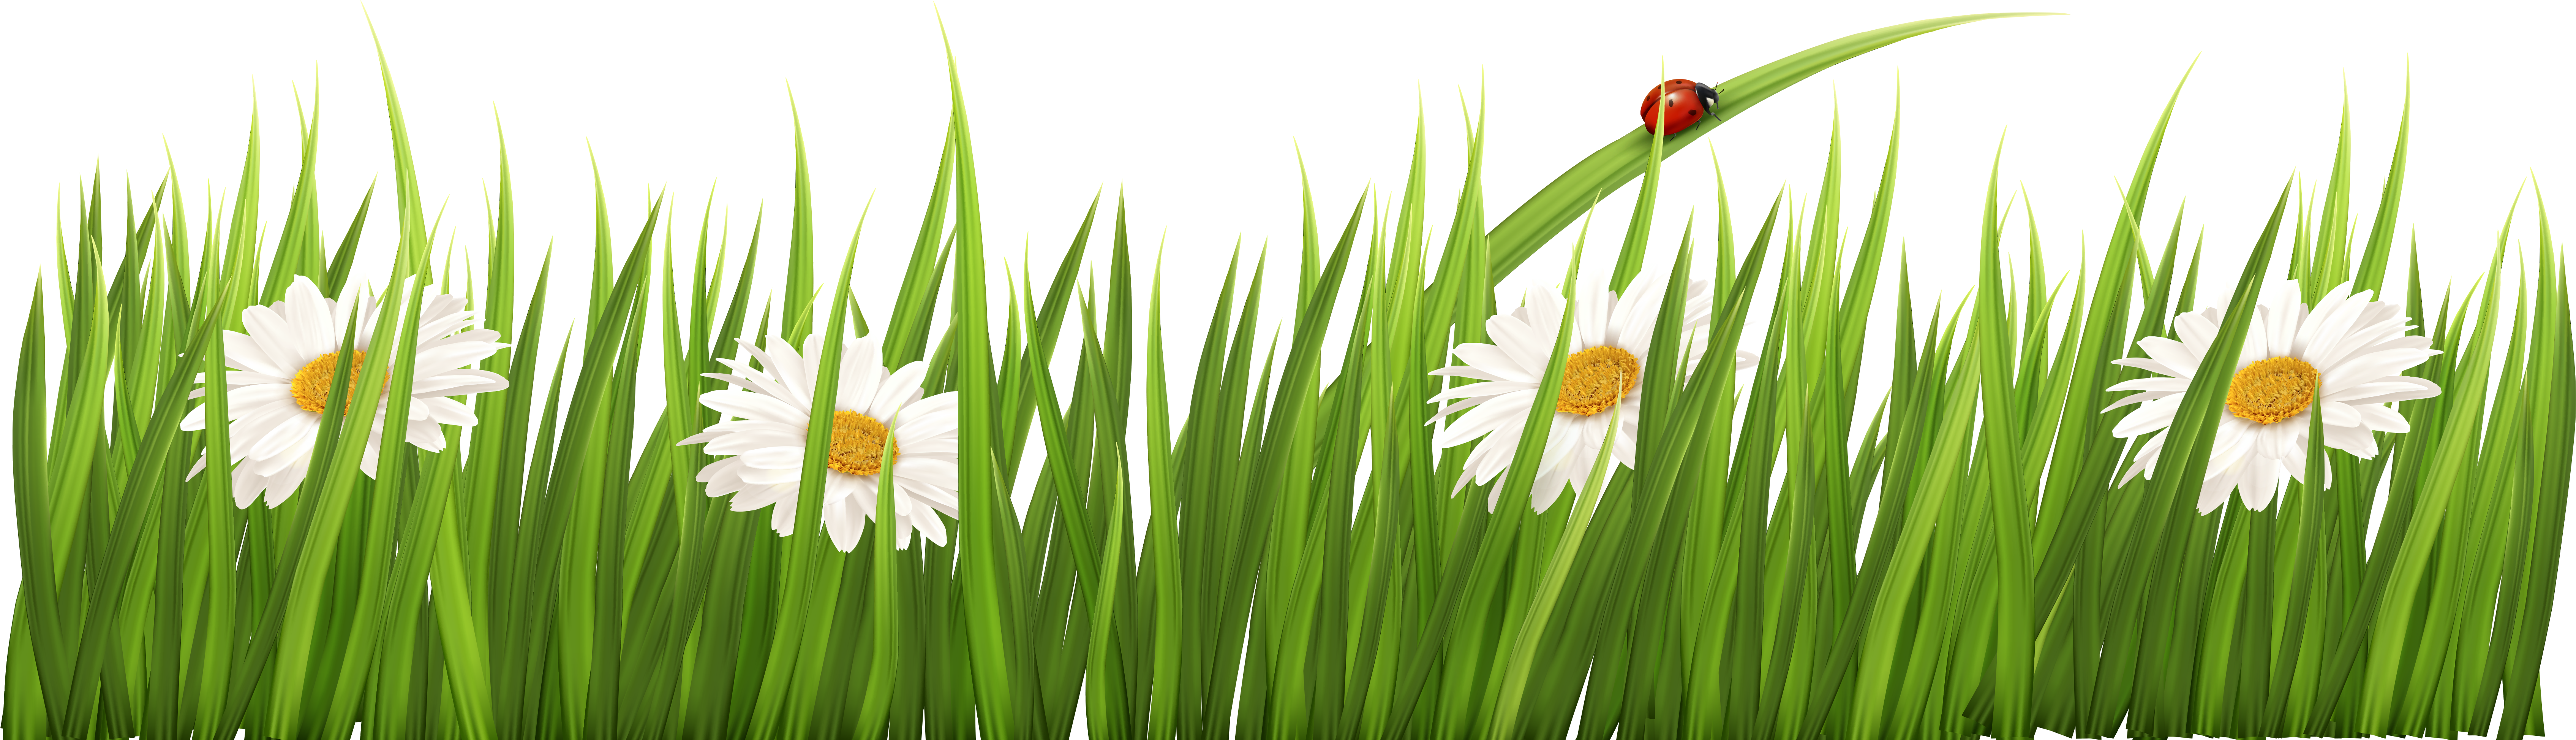 Травка с цветочками. Полоска зеленой травы. Трава с цветами на прозрачном фоне. Травка на белом фоне.